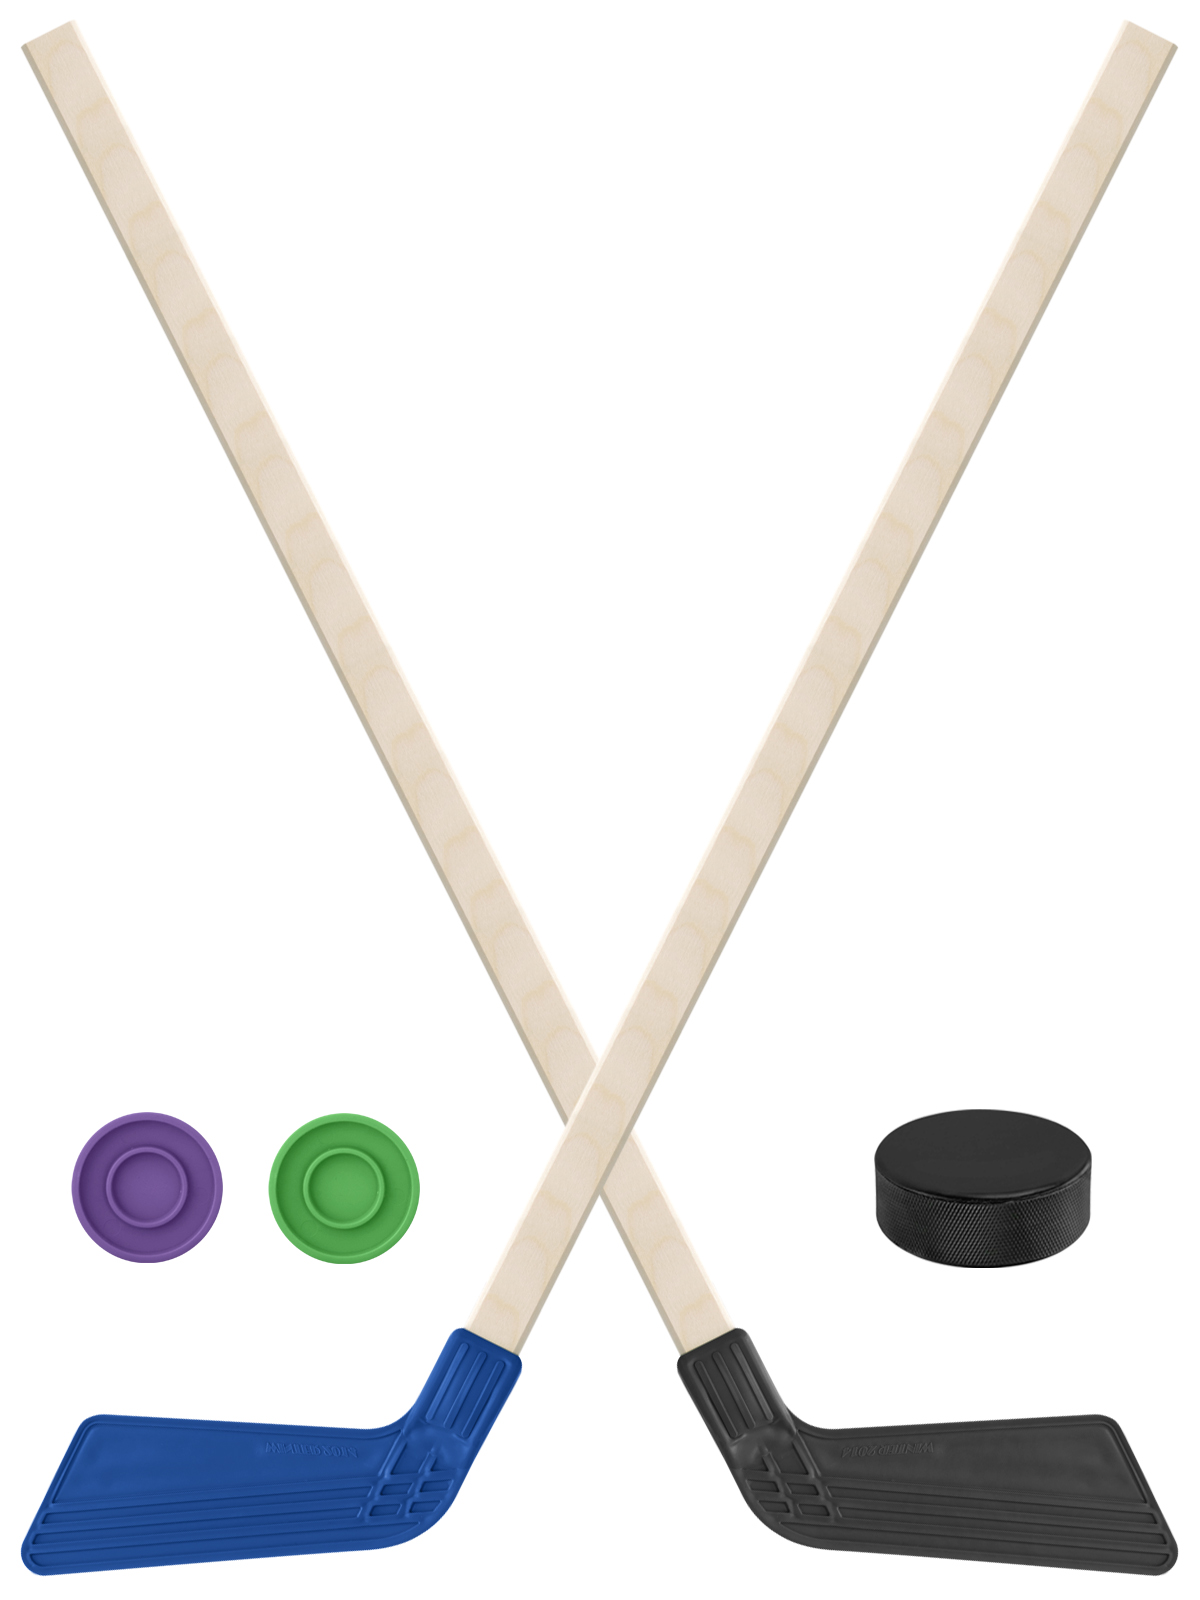 Детский хоккейный набор Задира-плюс Клюшка хоккейная 2шт(син,чёрн)+2шайбы+Шайба 75 мм клюшка флорбольная oxdog ultralight hes 31 wt 92 sweoval mb левый